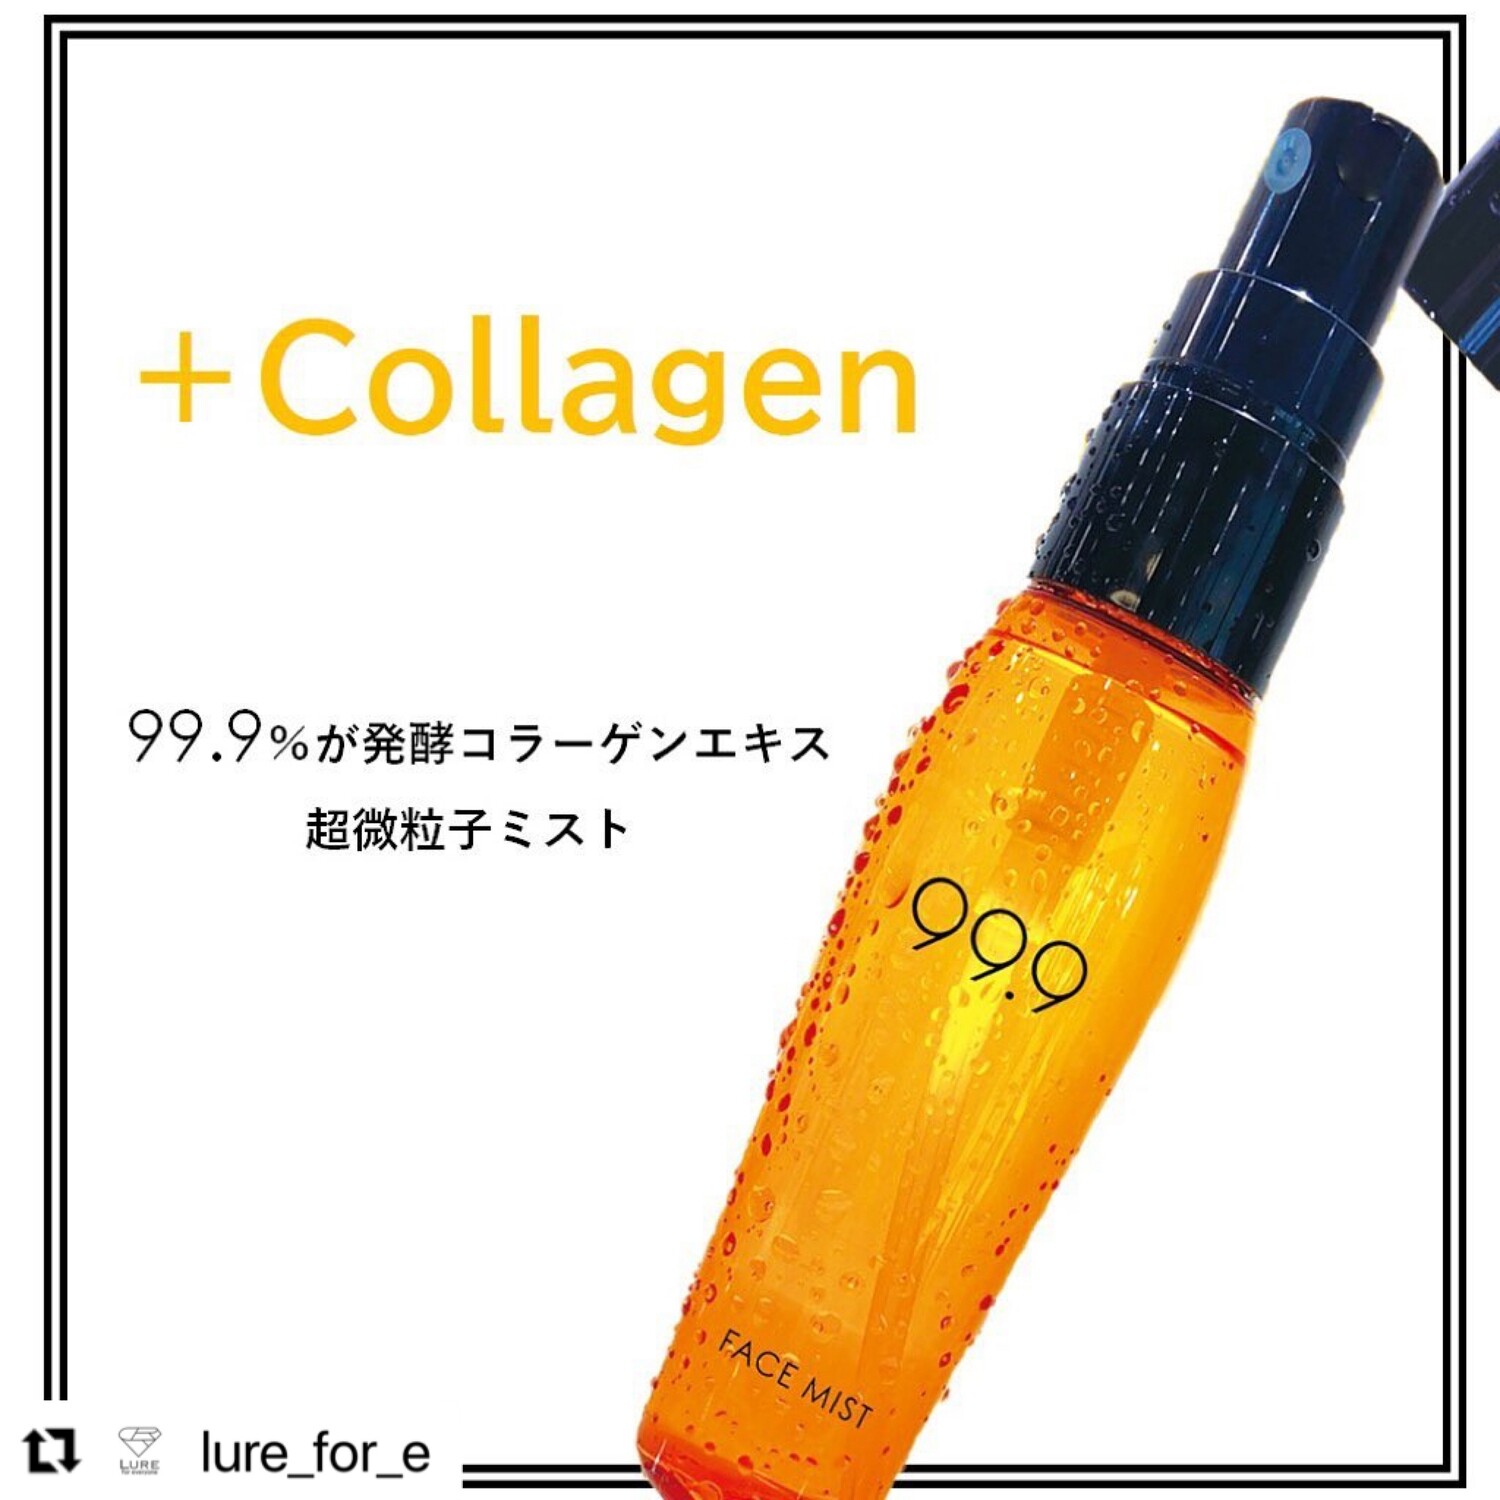 Plus Collagen Mist - For moisturizing anytime